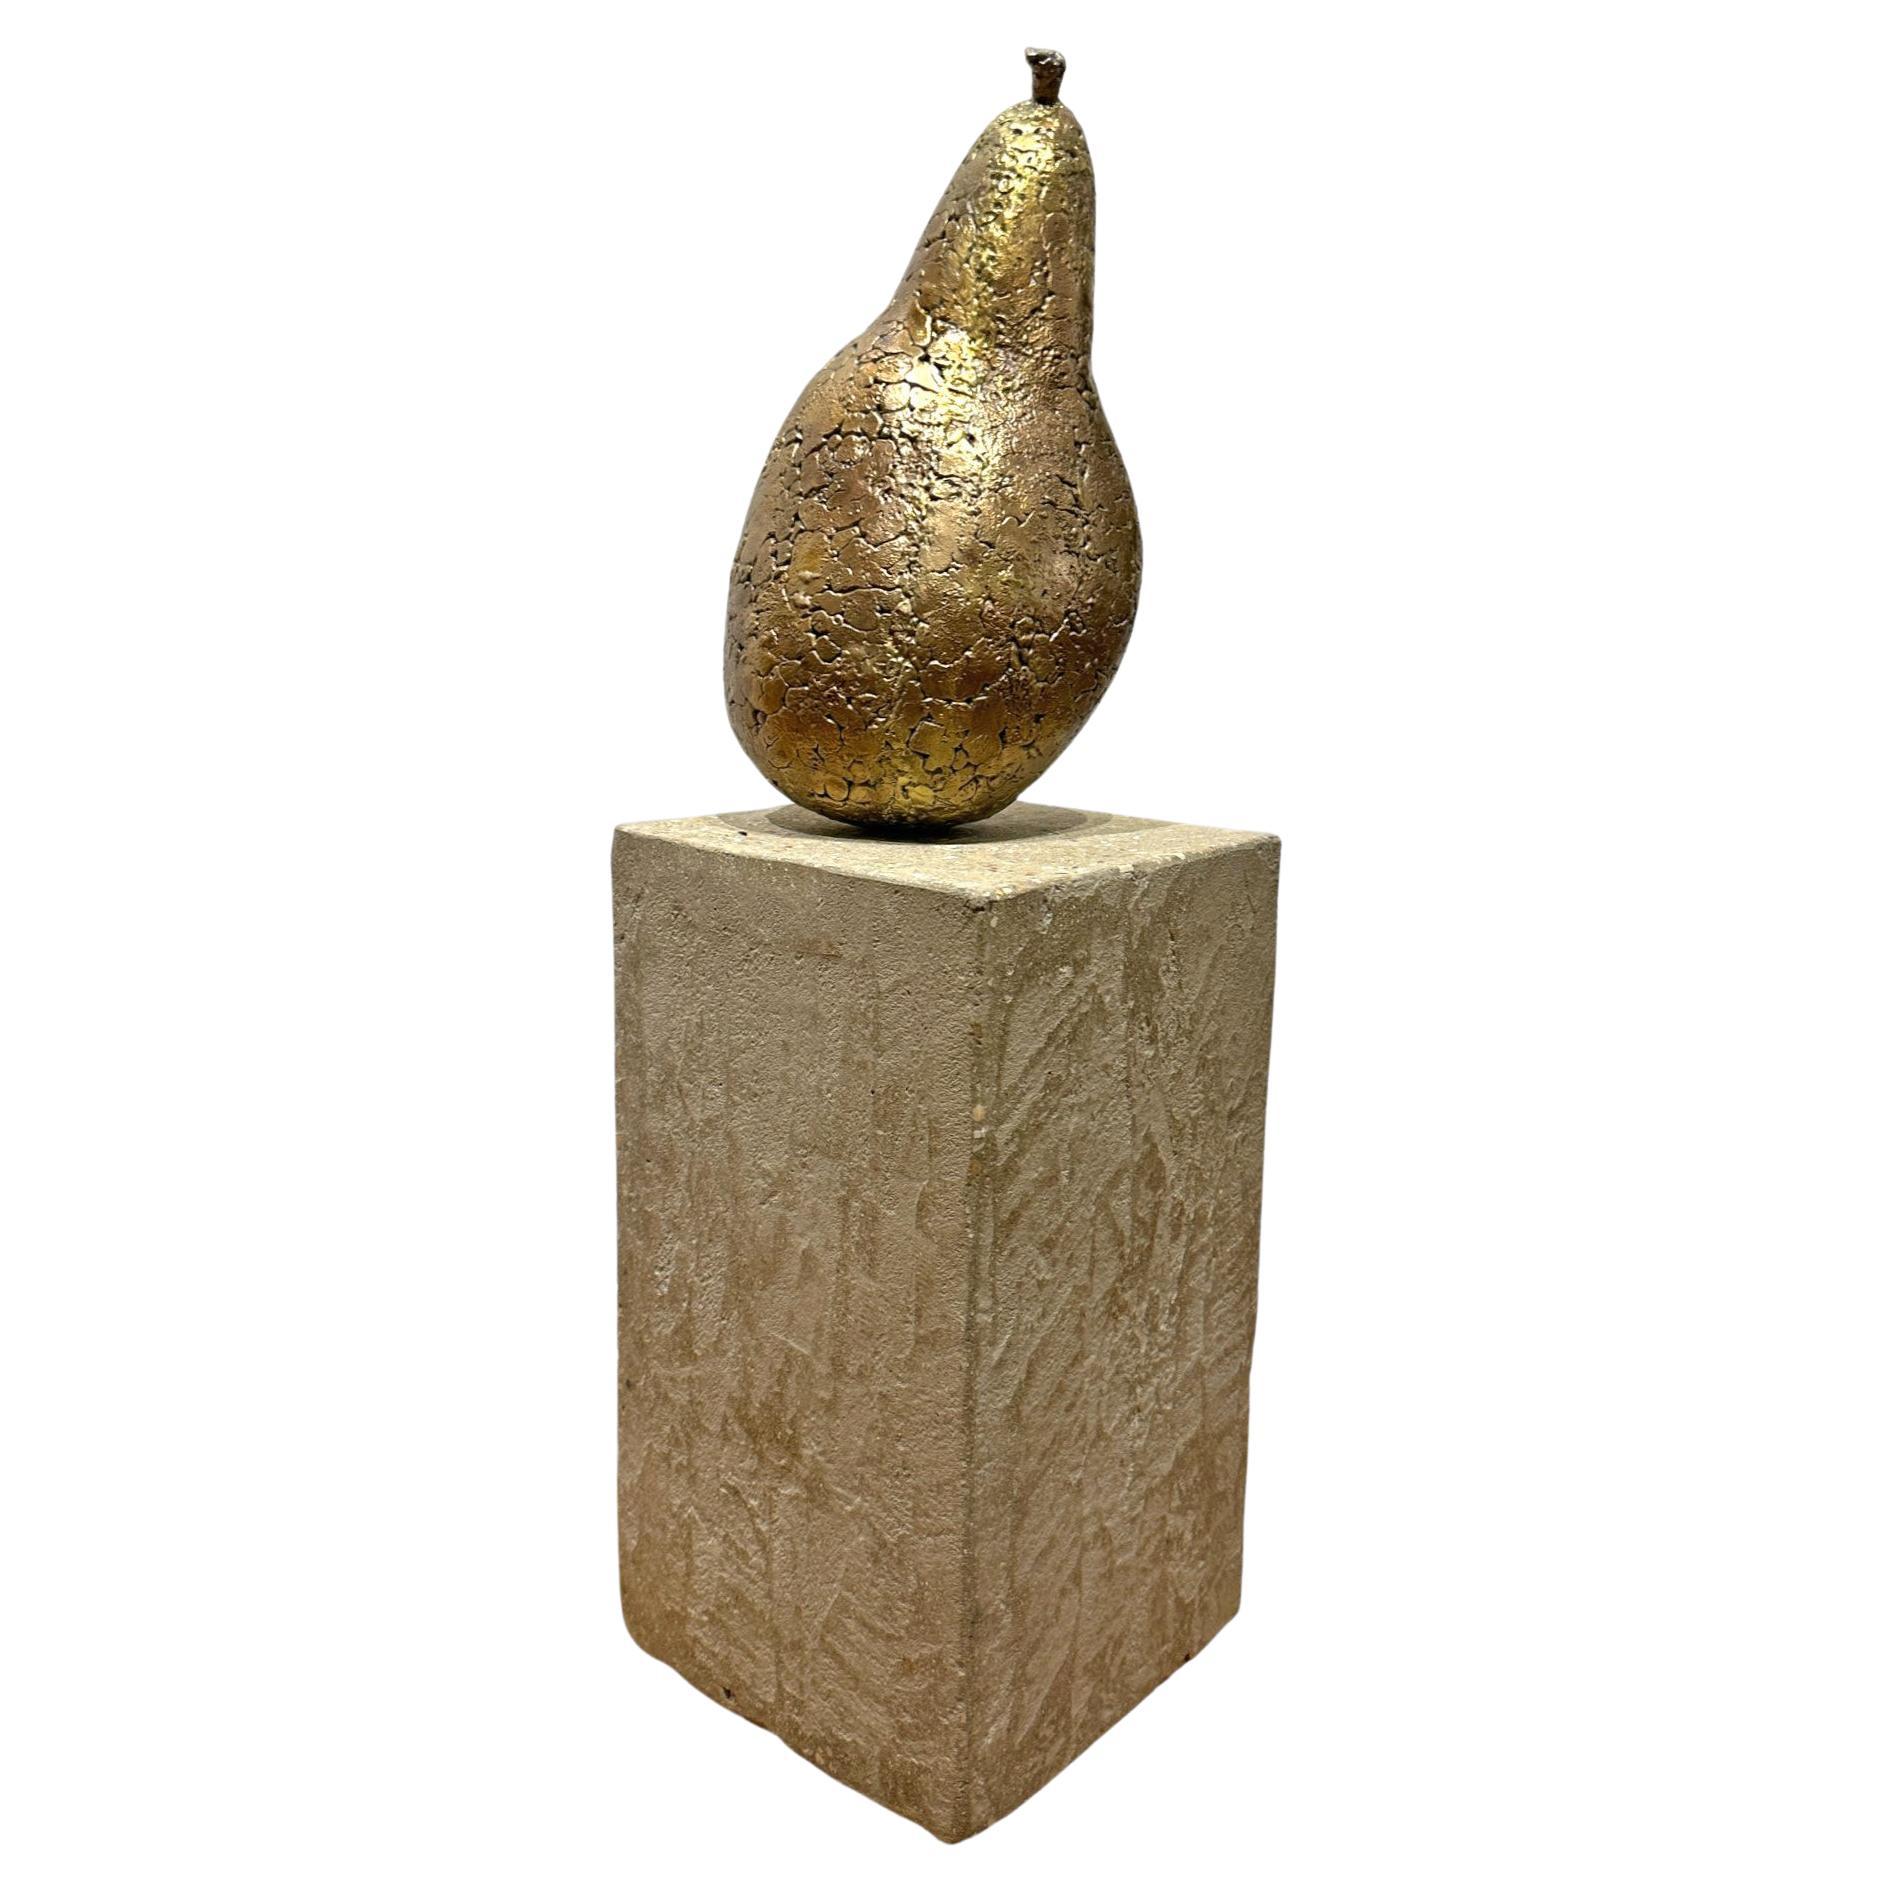 Une poire en bronze surdimensionnée repose sur une base en béton dans l'œuvre unique de Mary Block intitulée Autumn Pear.  Cette sculpture en bronze unique en son genre est parfaite dans sa forme imparfaite, comme seule la nature peut en produire. 